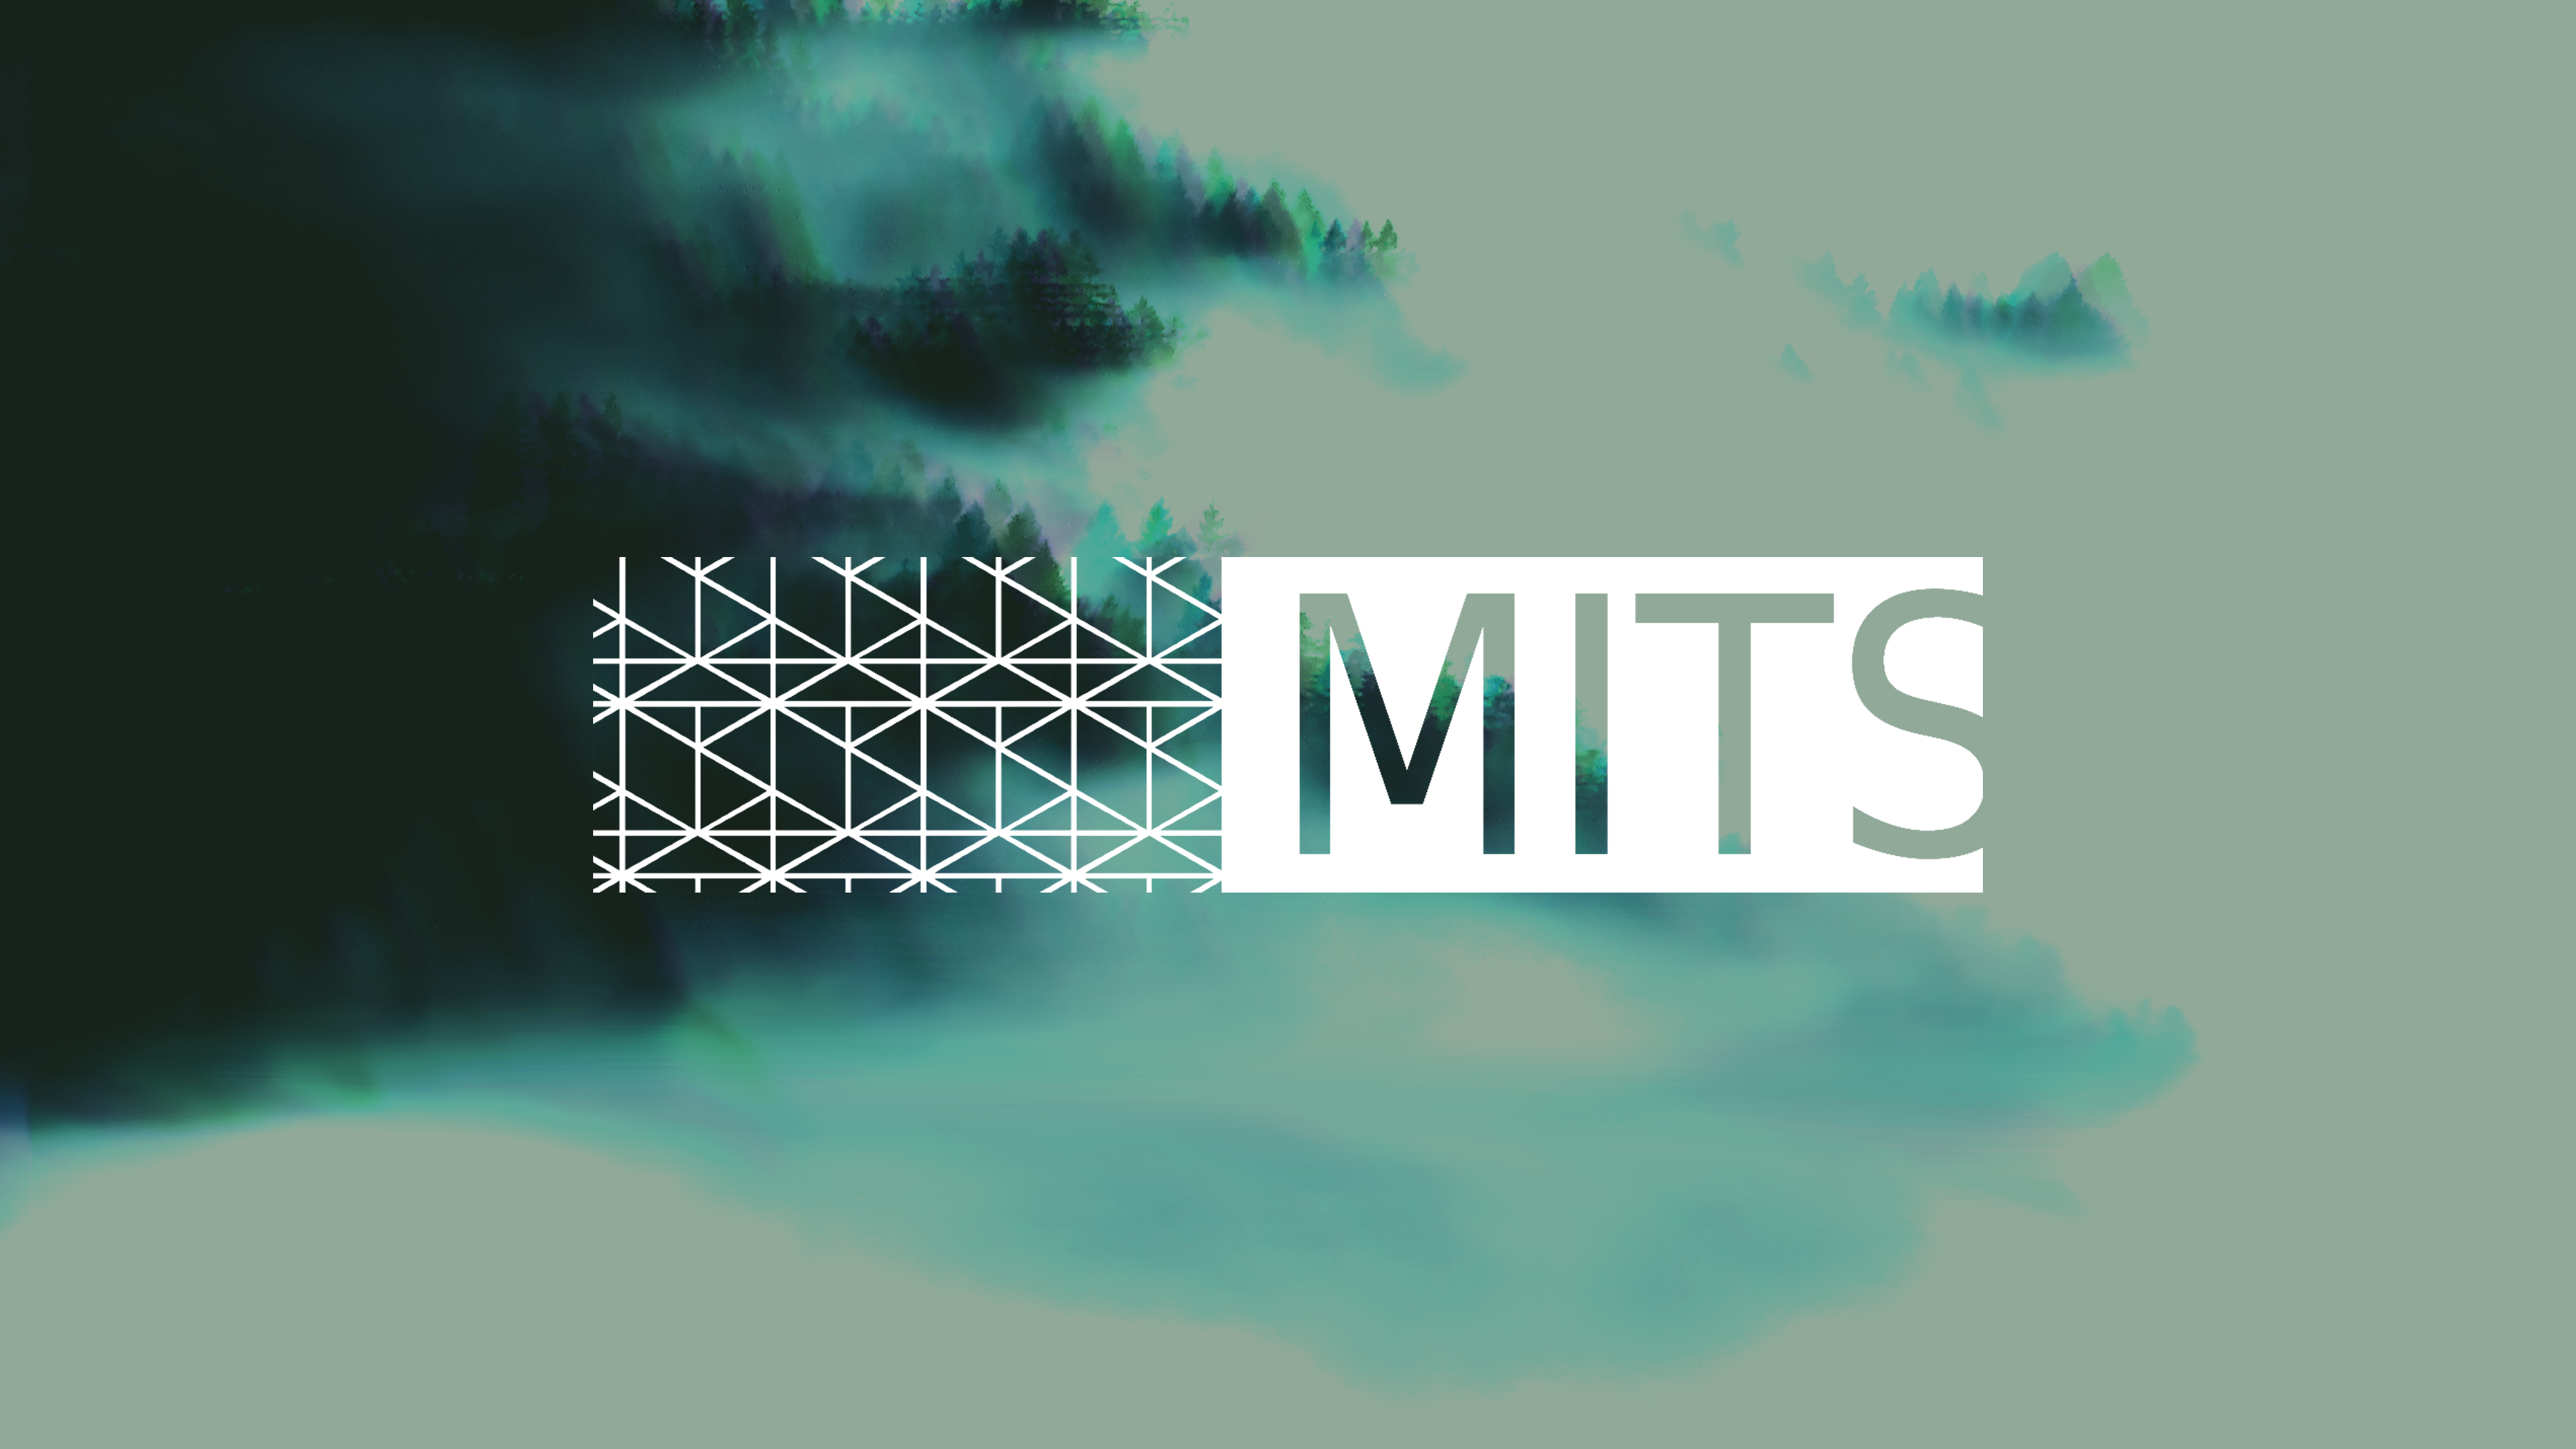 MITS - Moda, Inovação, Tecnologia e Sustentabilidade